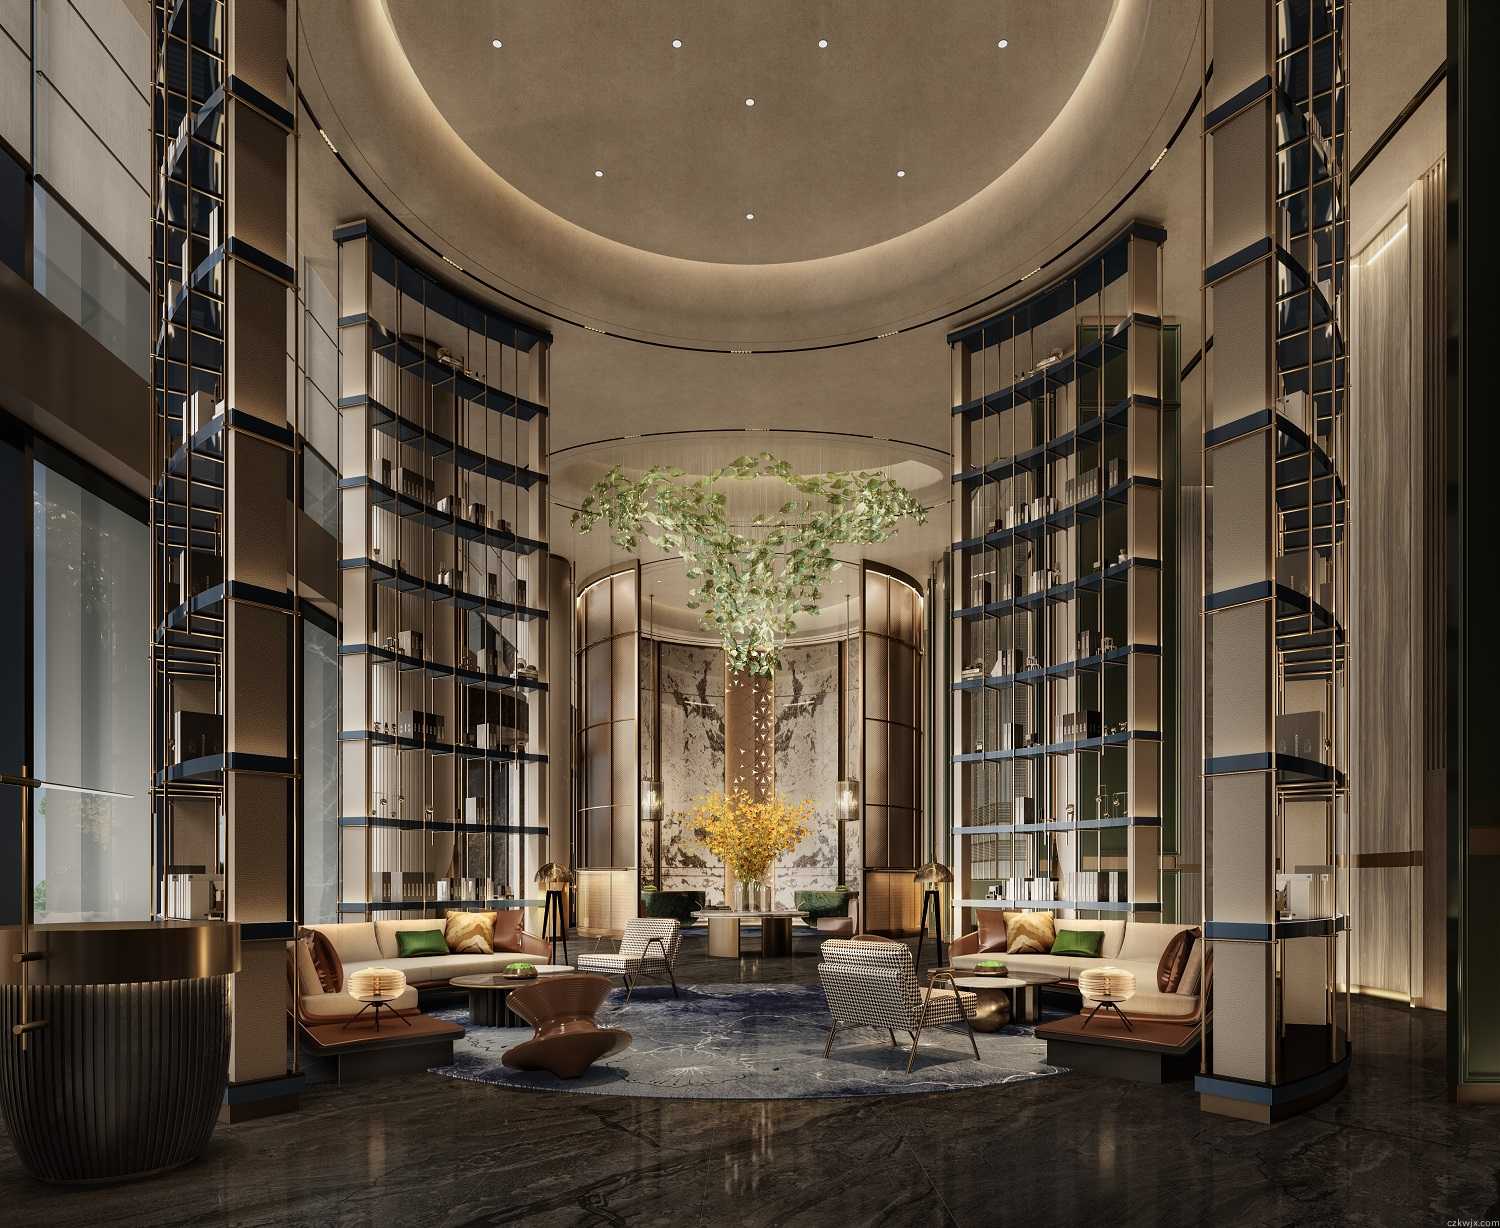 廣州黃埔希爾頓酒店裝修設計效果圖案例